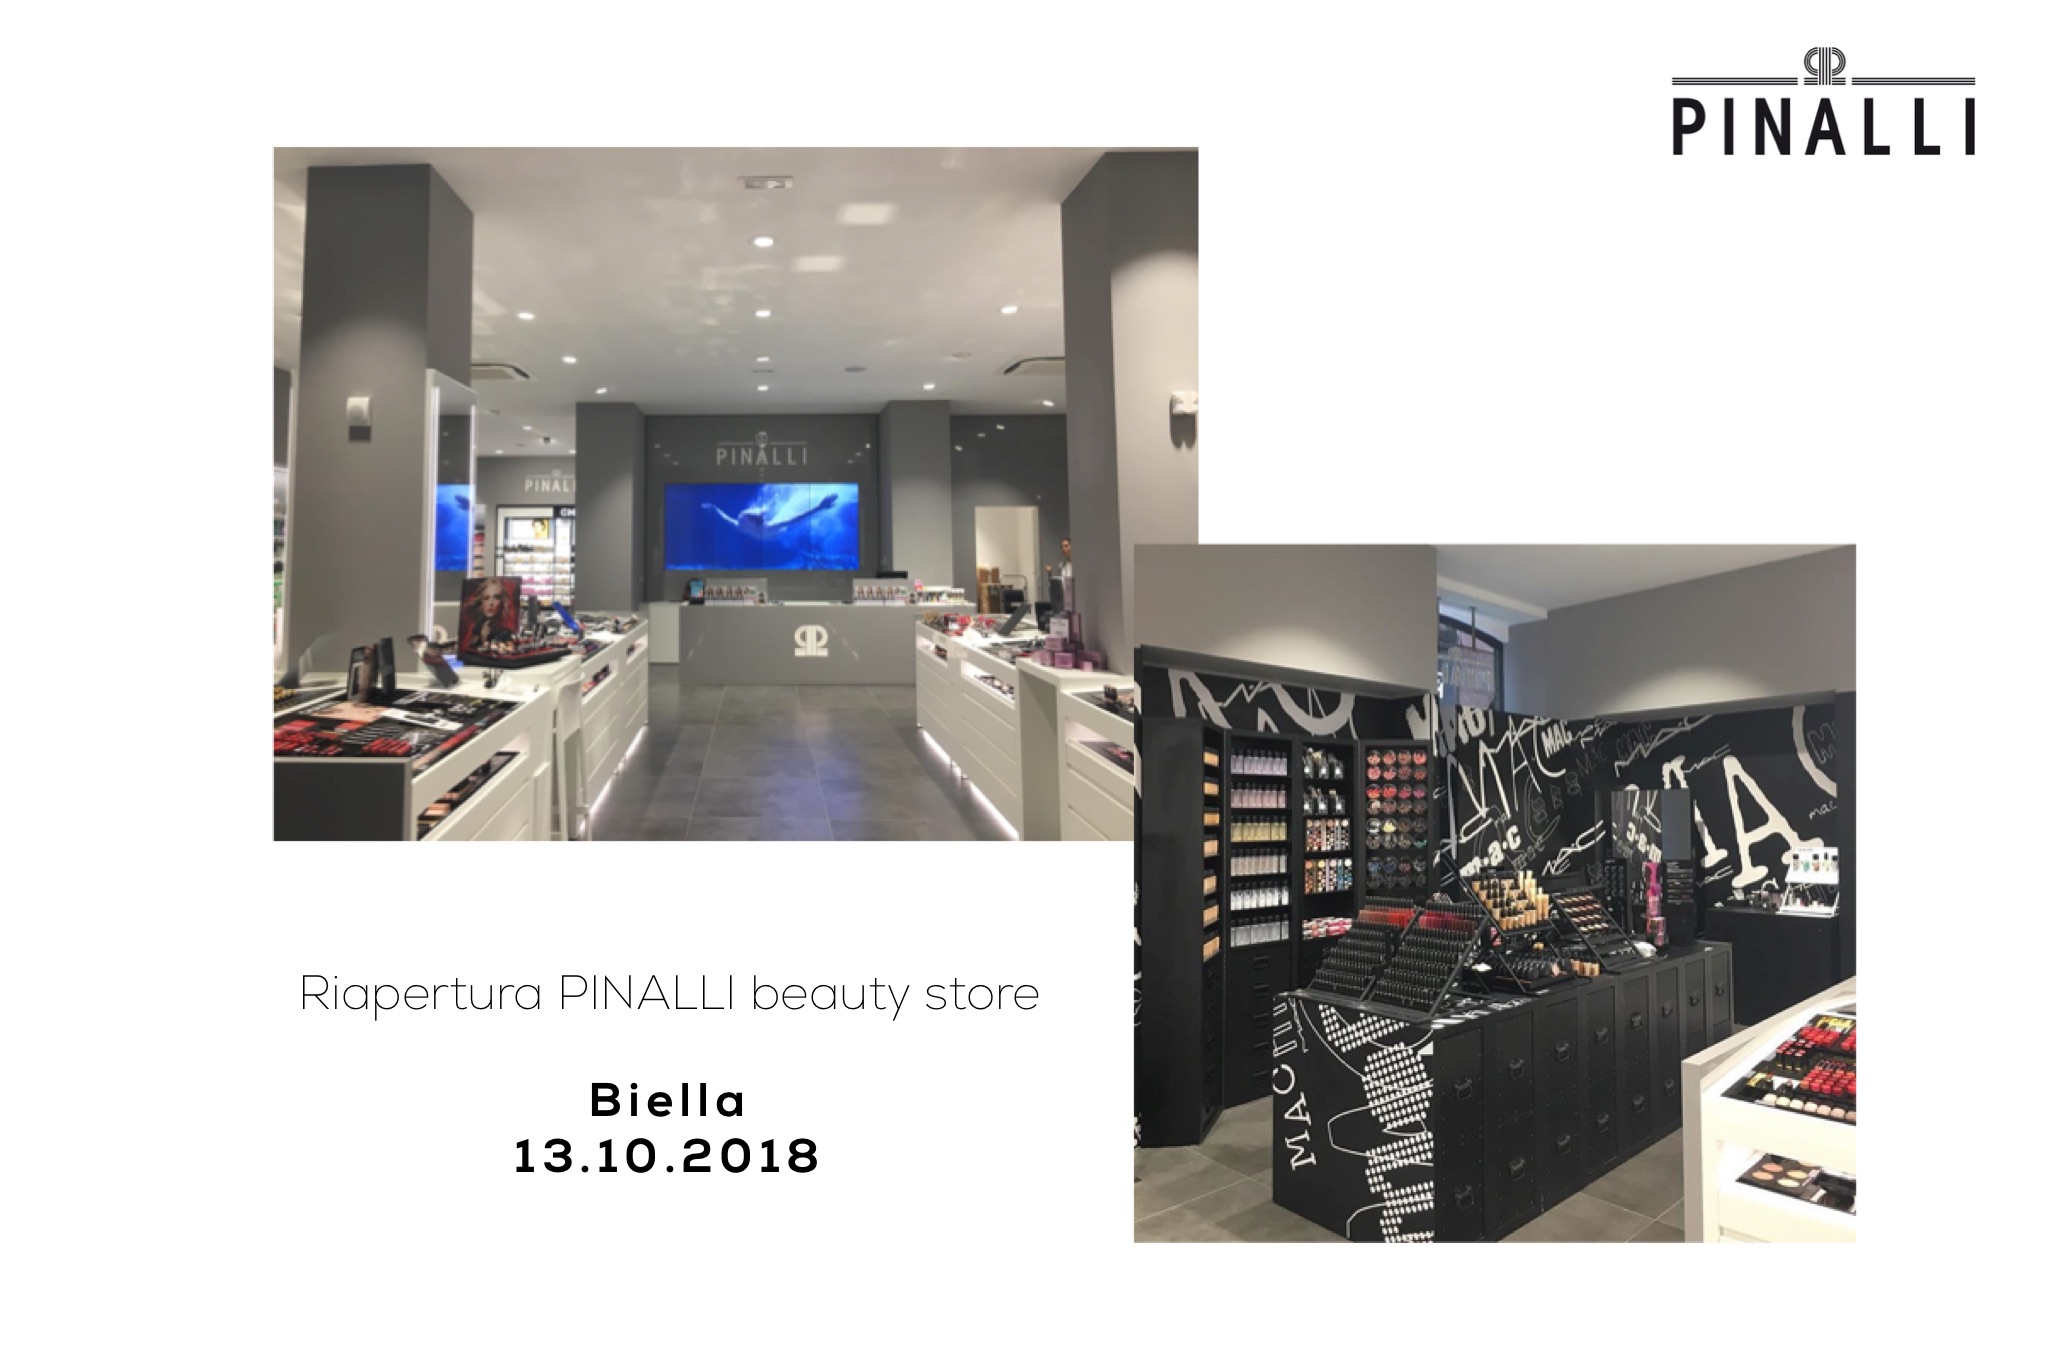 Riapre al pubblico, con un'innovativa veste, il beauty store Pinalli Biella